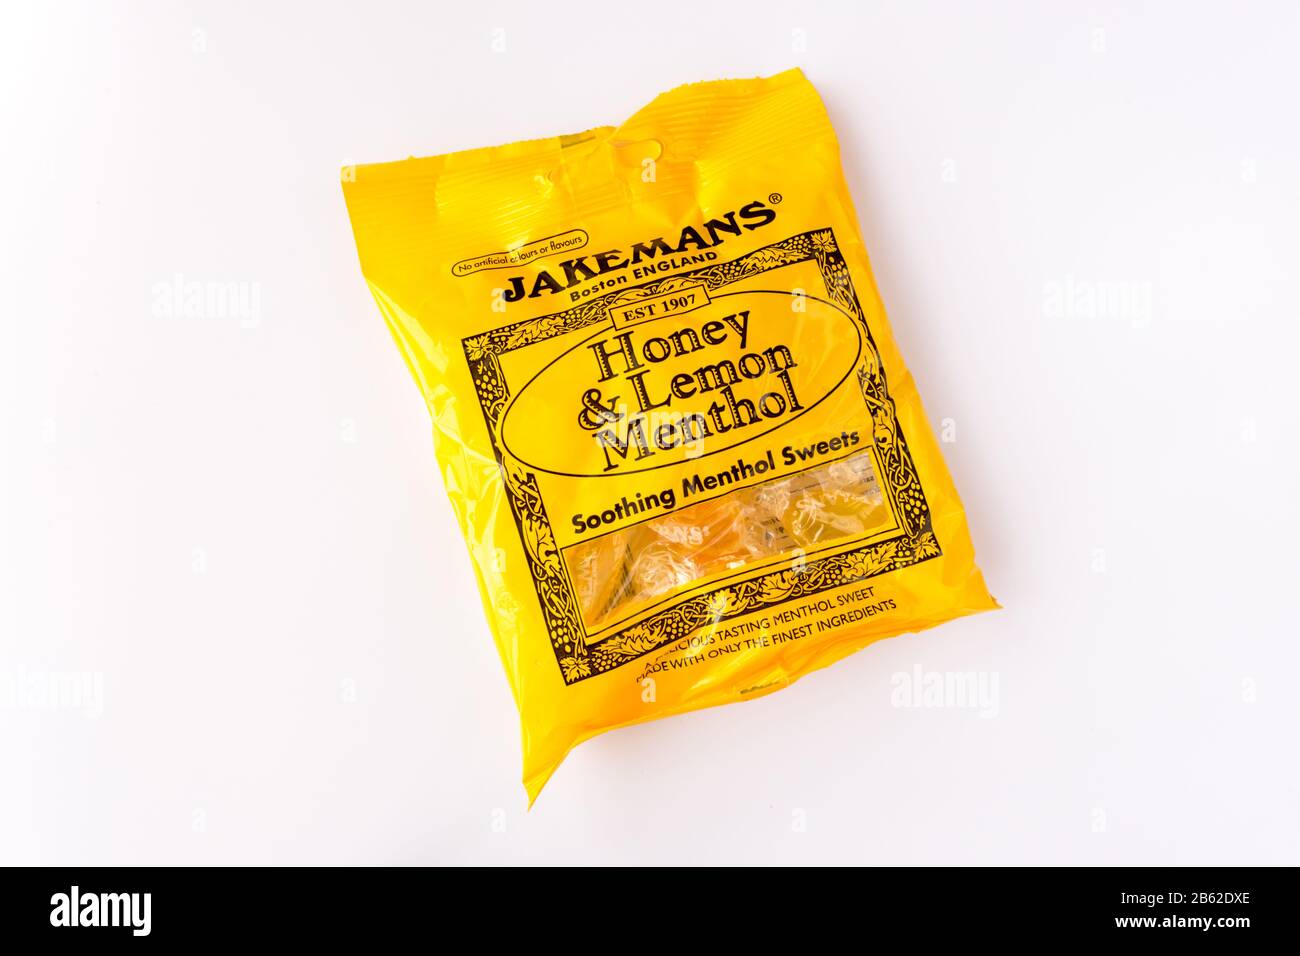 Confezione di miele di Jakemans e dolci al mentolo lenitivi al limone Foto Stock